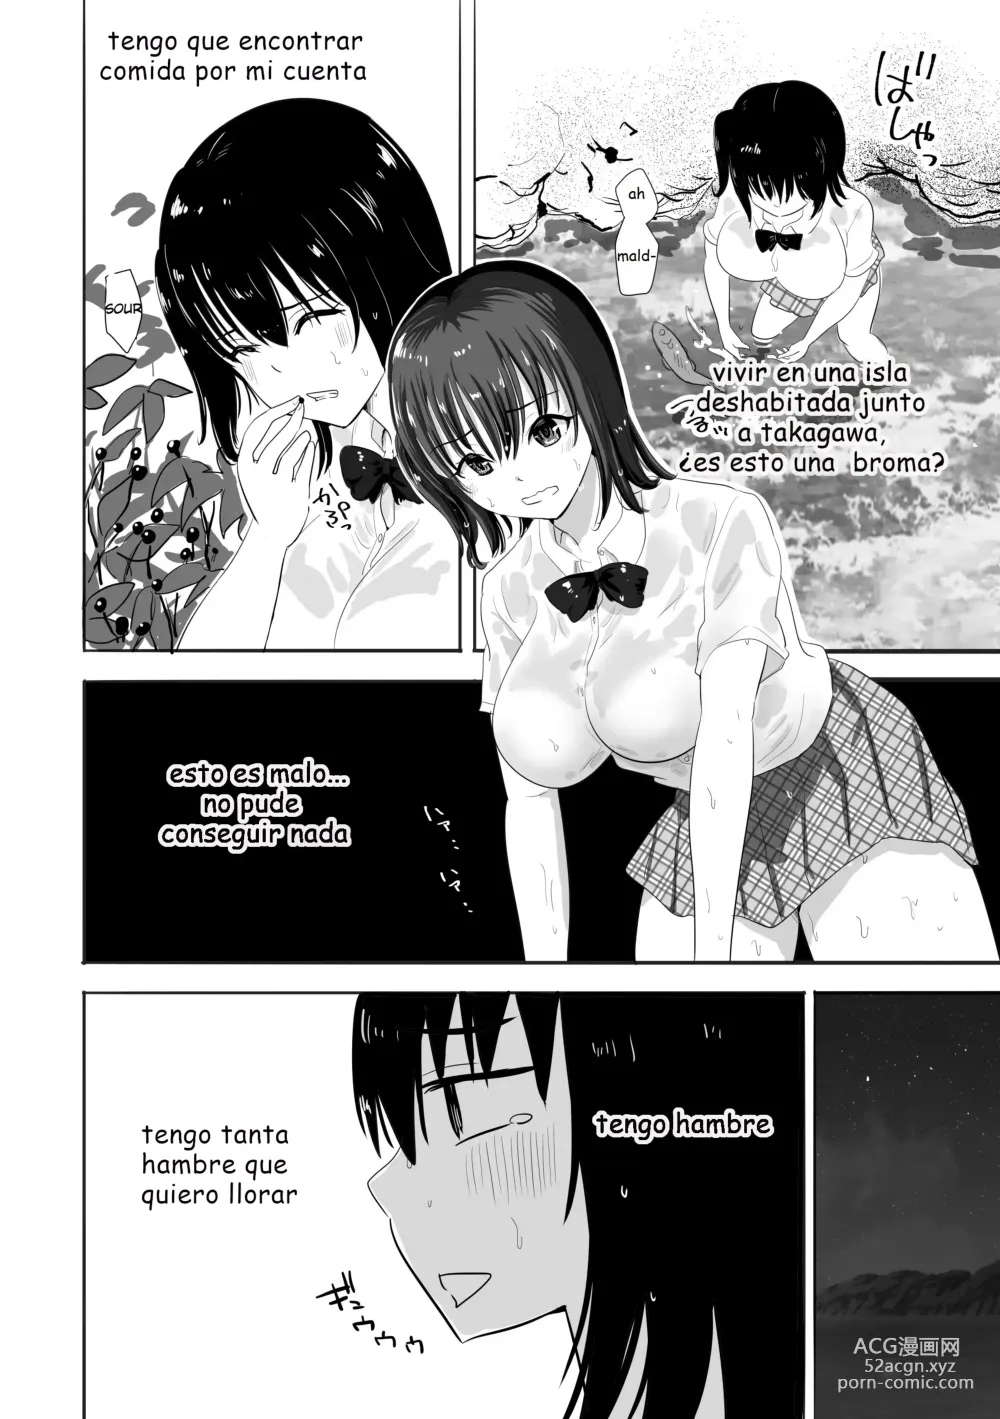 Page 9 of doujinshi Una chica con el uniforme mojada vive sola en una isla desierta con un profesor que la acosa sexualmente